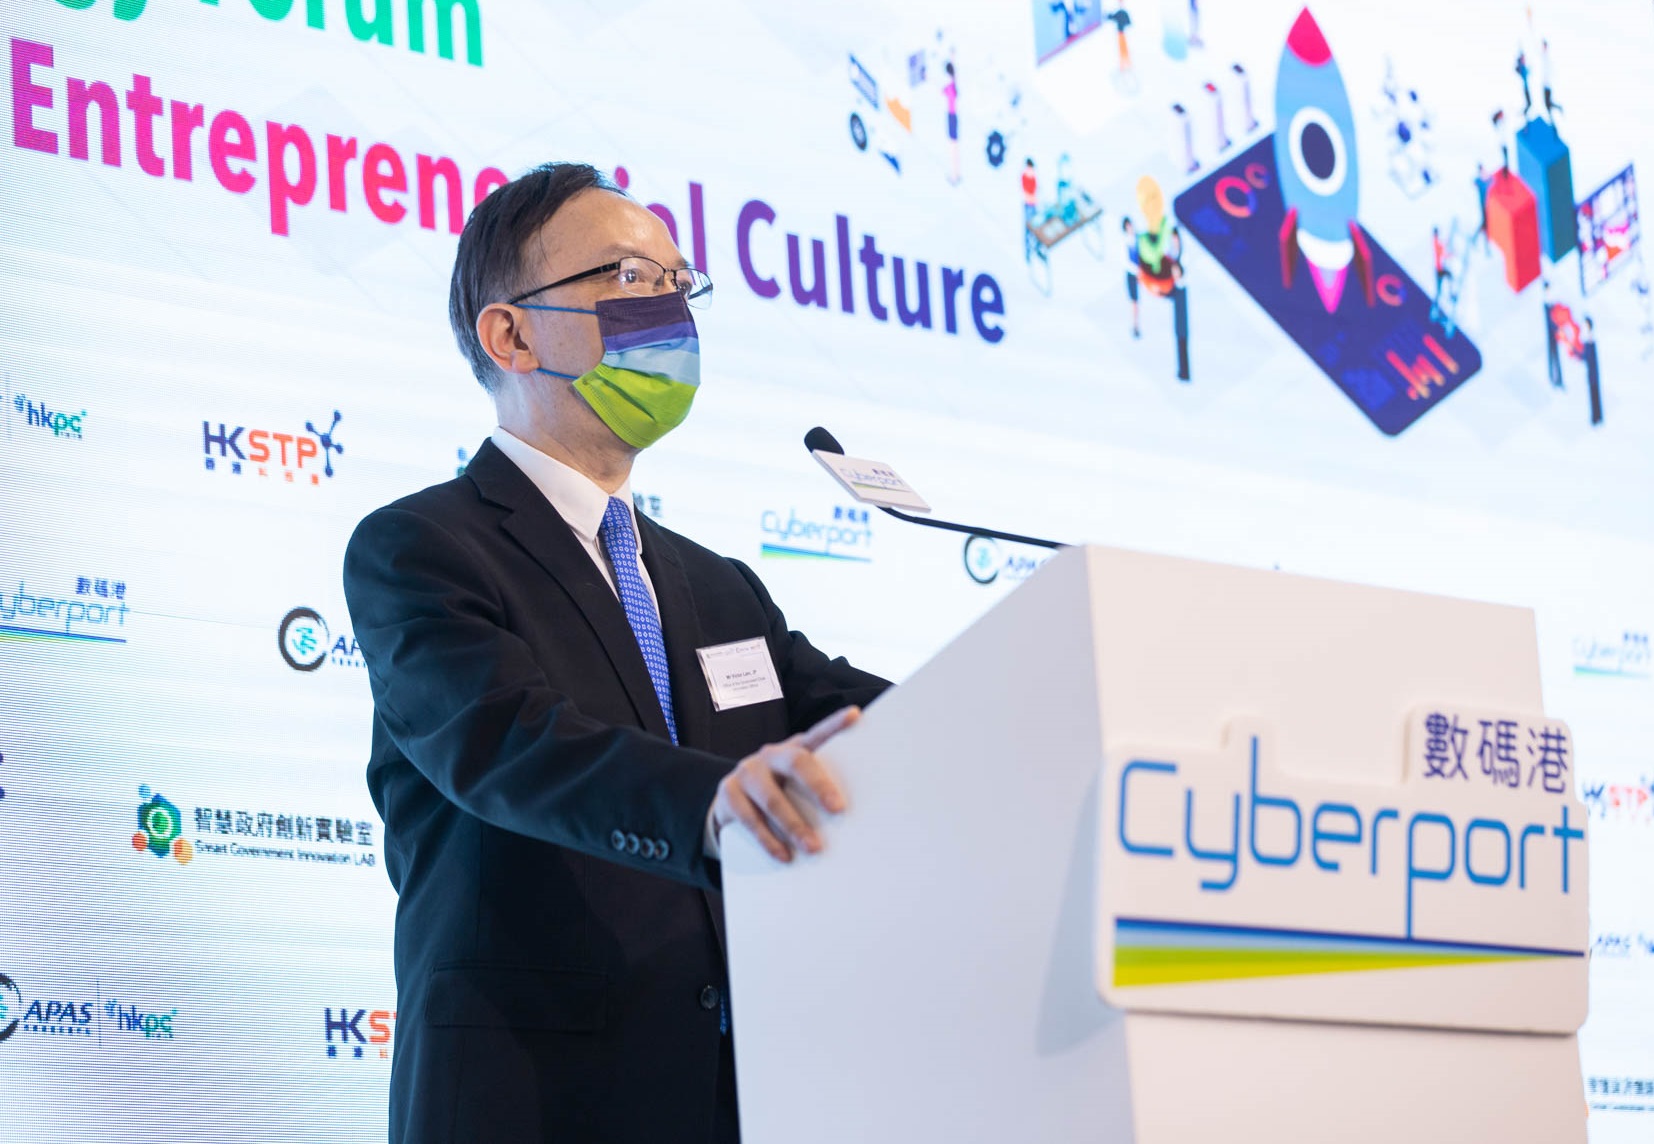 政府资讯科技总监林伟乔先生于「网上技术论坛 — 创新及创业文化」致辞